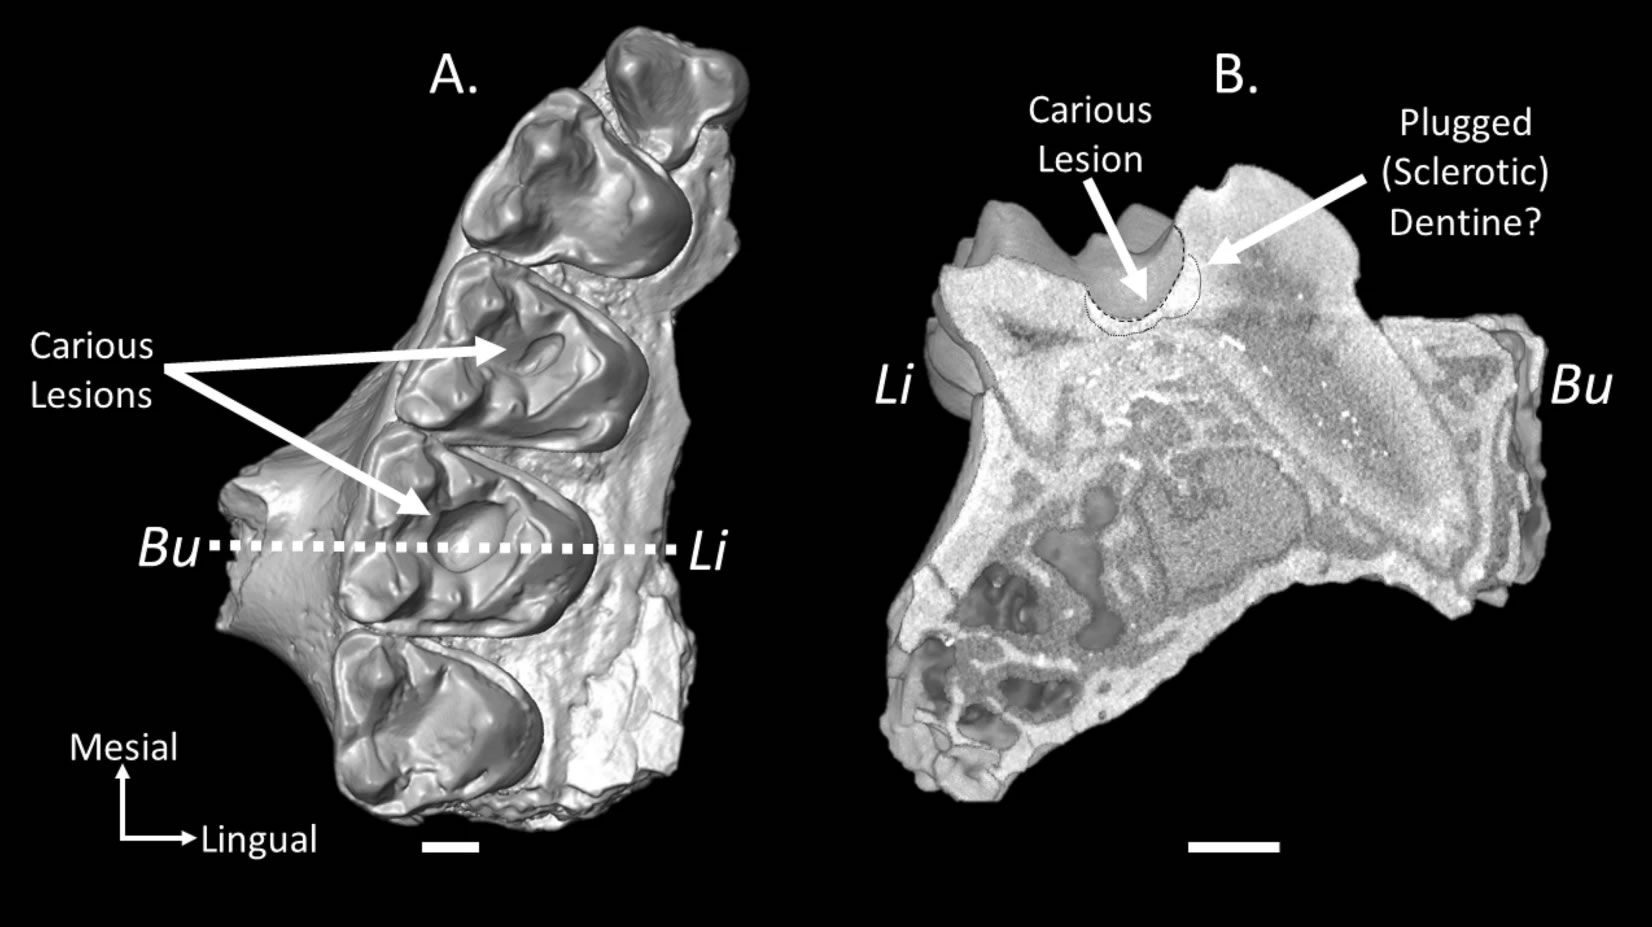 龋齿化石表明史前灵长类动物可能爱吃甜食